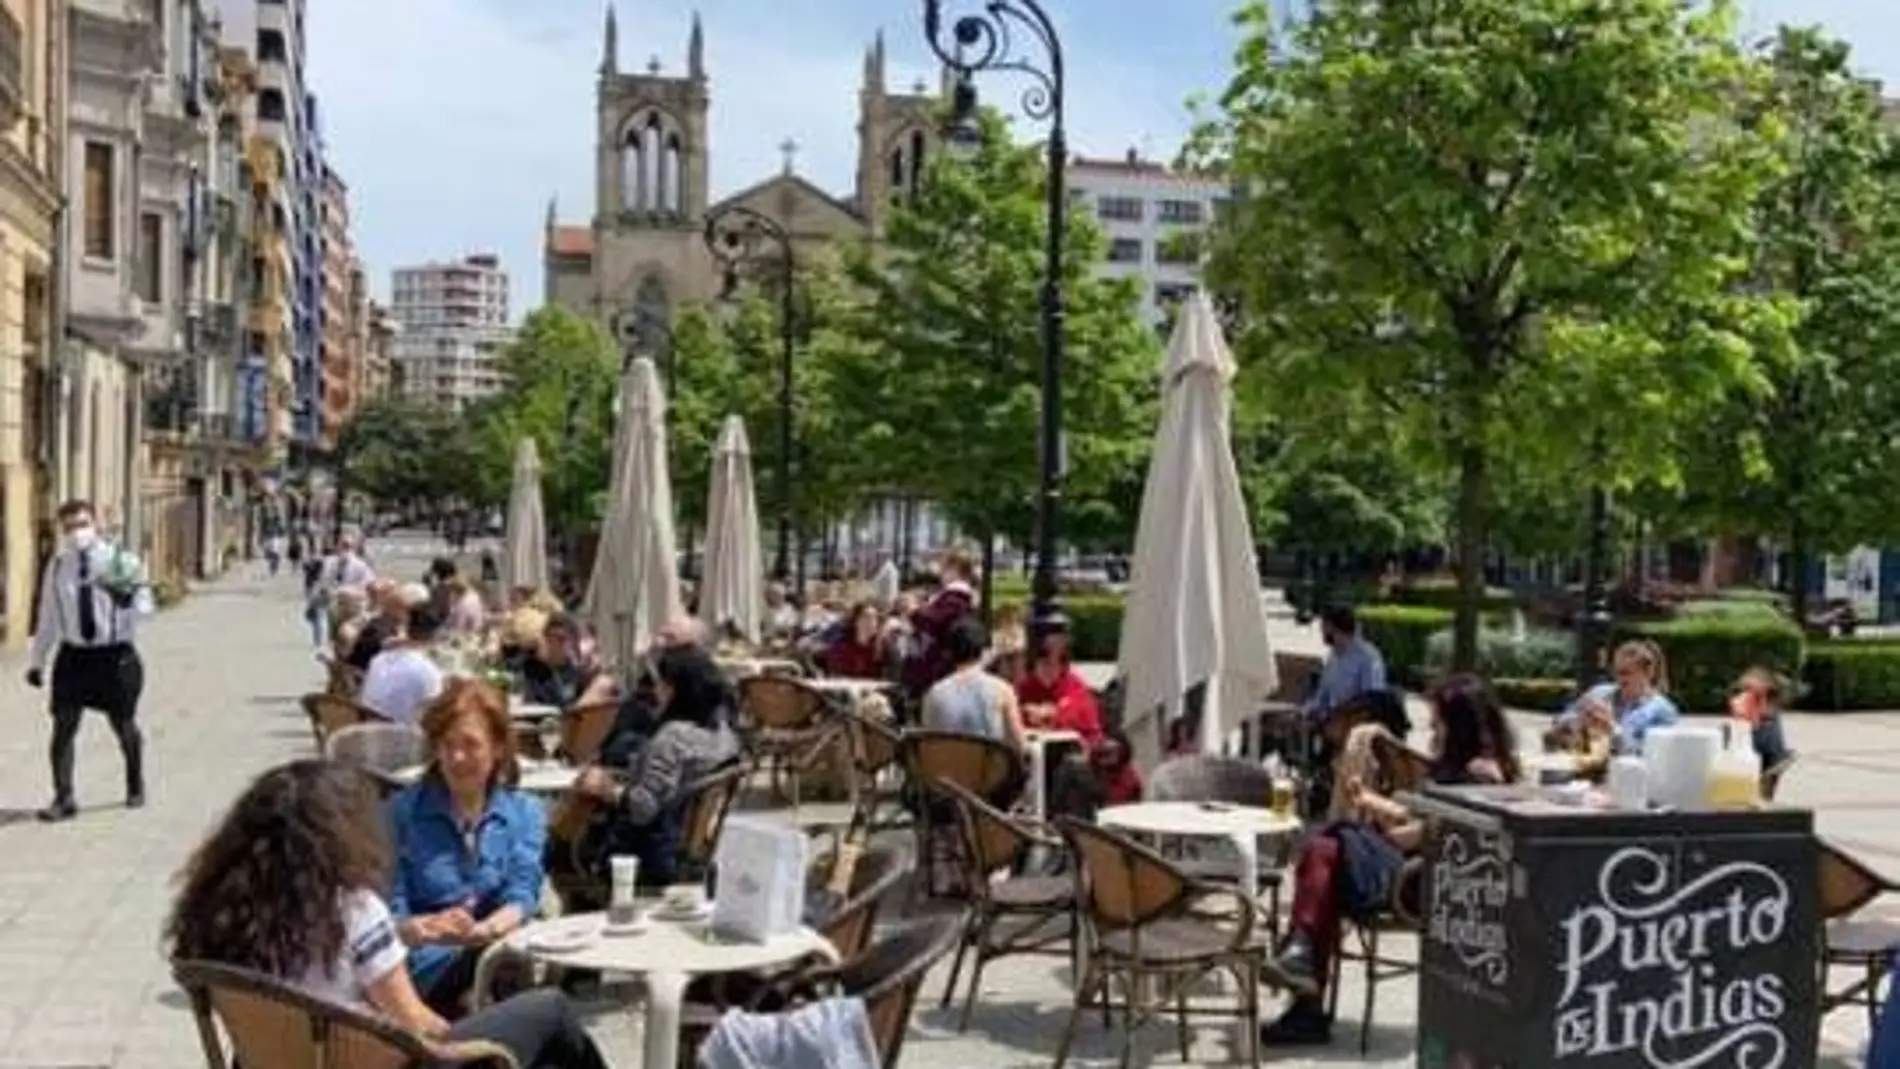 Terrazas hosteleras en el Paseo de Begoña en Gijón